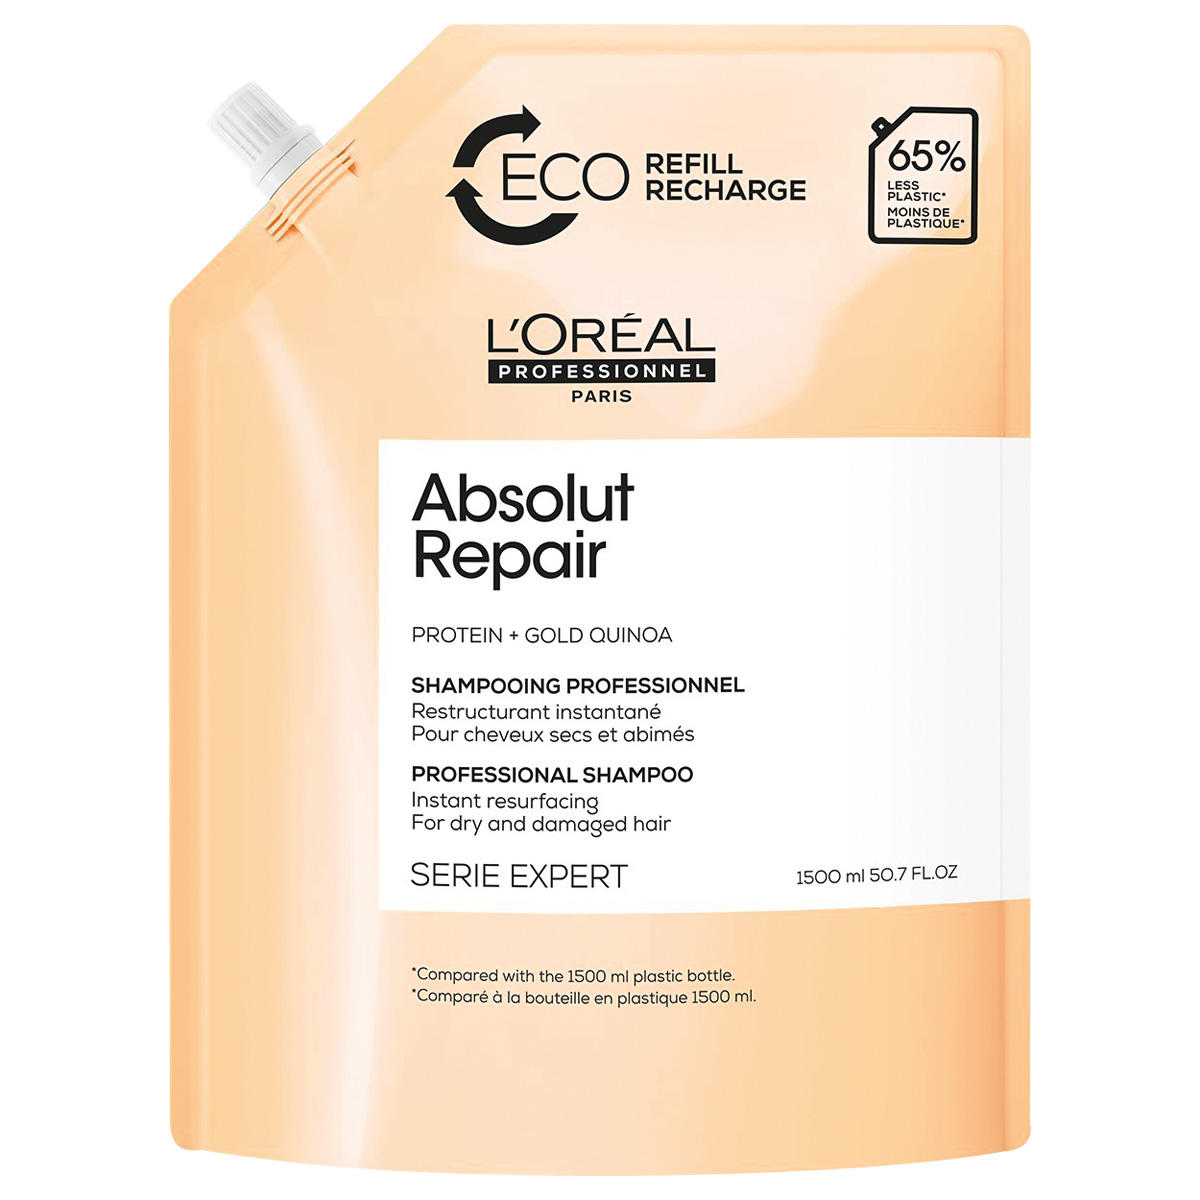 L'Oréal Professionnel Paris Serie Expert Absolut Repair Professional Shampoo Refill 1,5 litre - 1